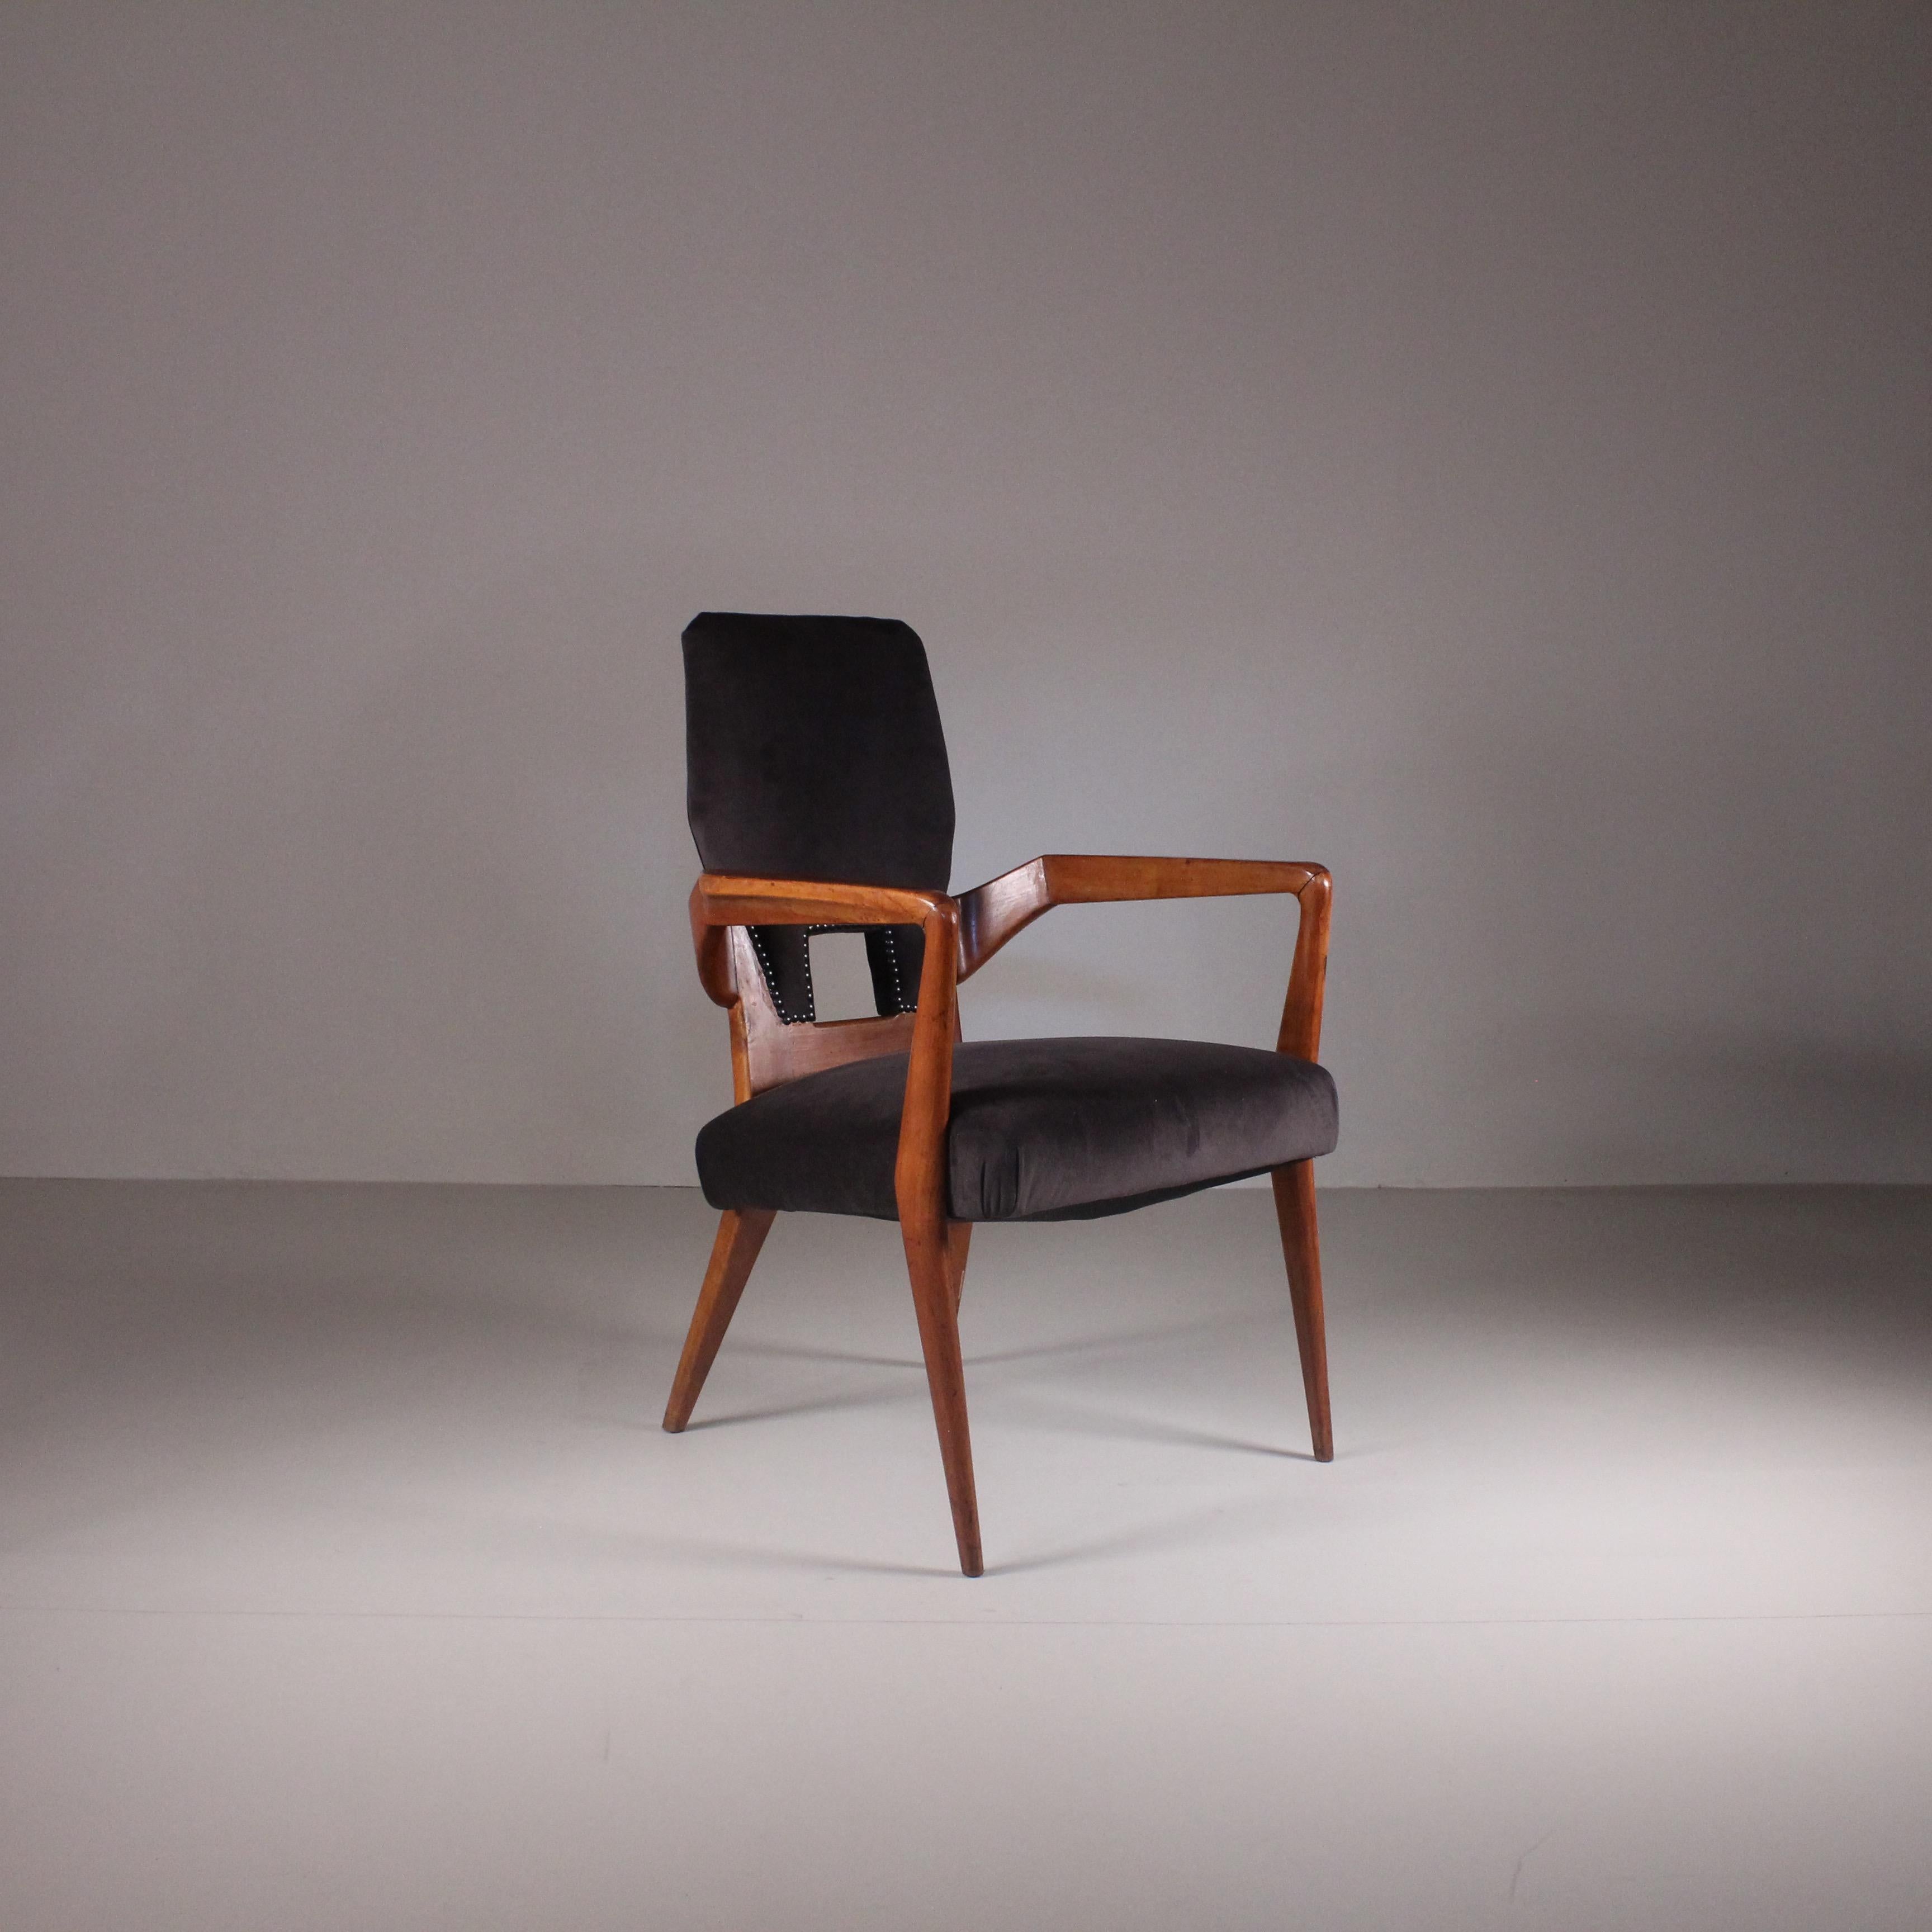 Fauteuil, attribué à Augusto Romano, années 1950. Ce fauteuil des années 1950 incarne l'essence du design moderne du milieu du siècle avec son élégance intemporelle et sa fonctionnalité. Cette pièce classique, fabriquée à l'époque de l'innovation